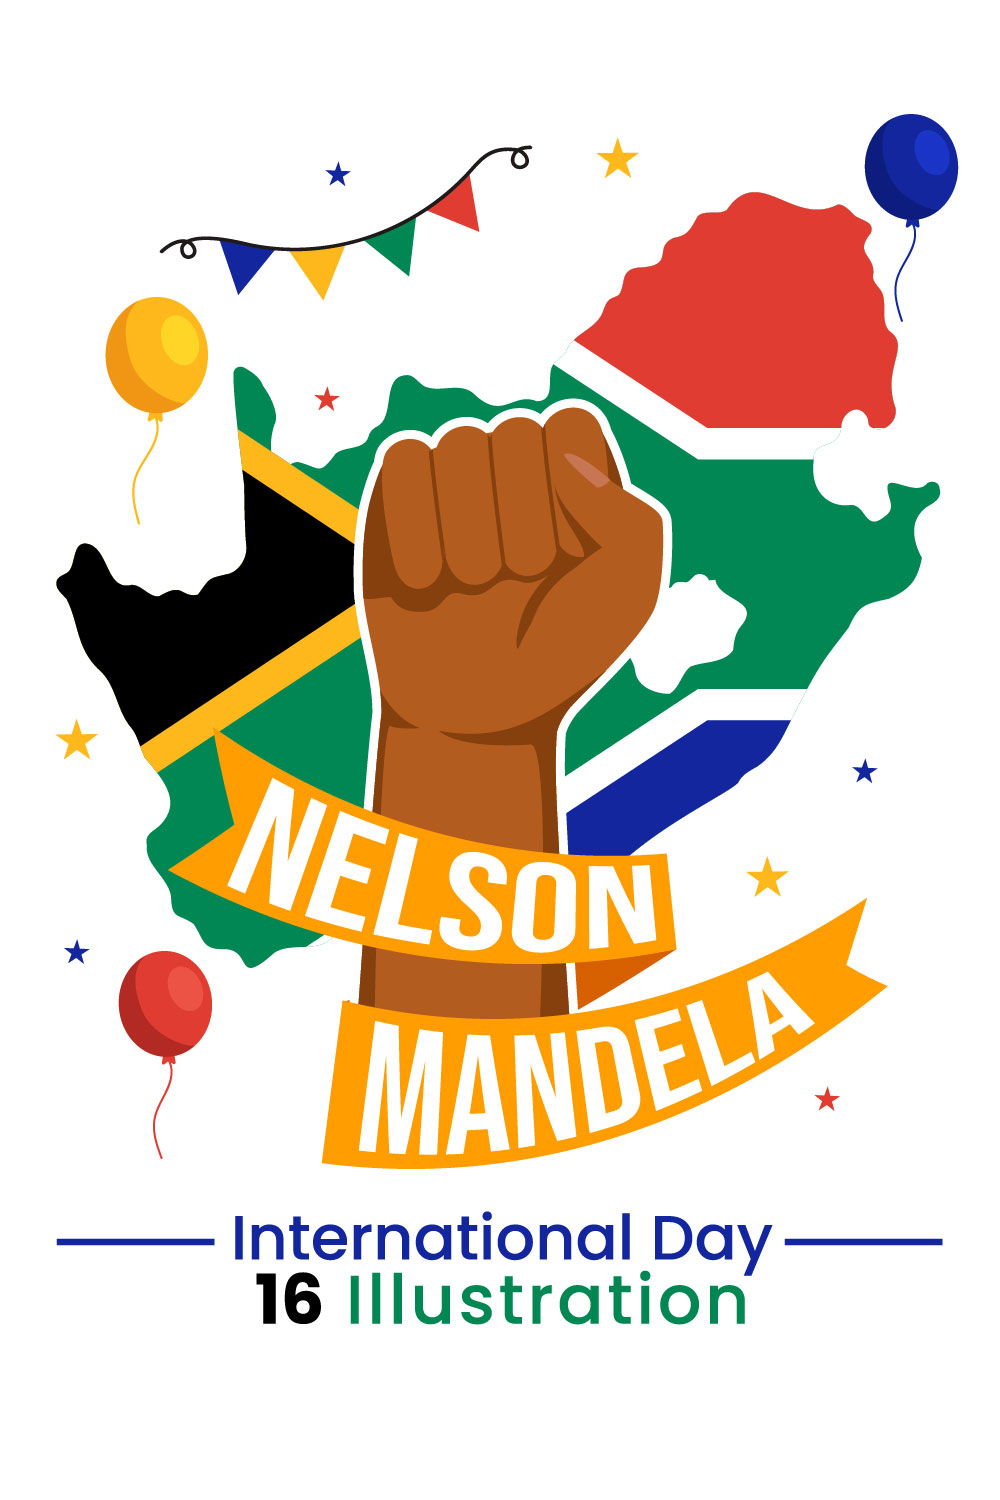 16 Nelson Mandela International Day Illustration pinterest preview image.